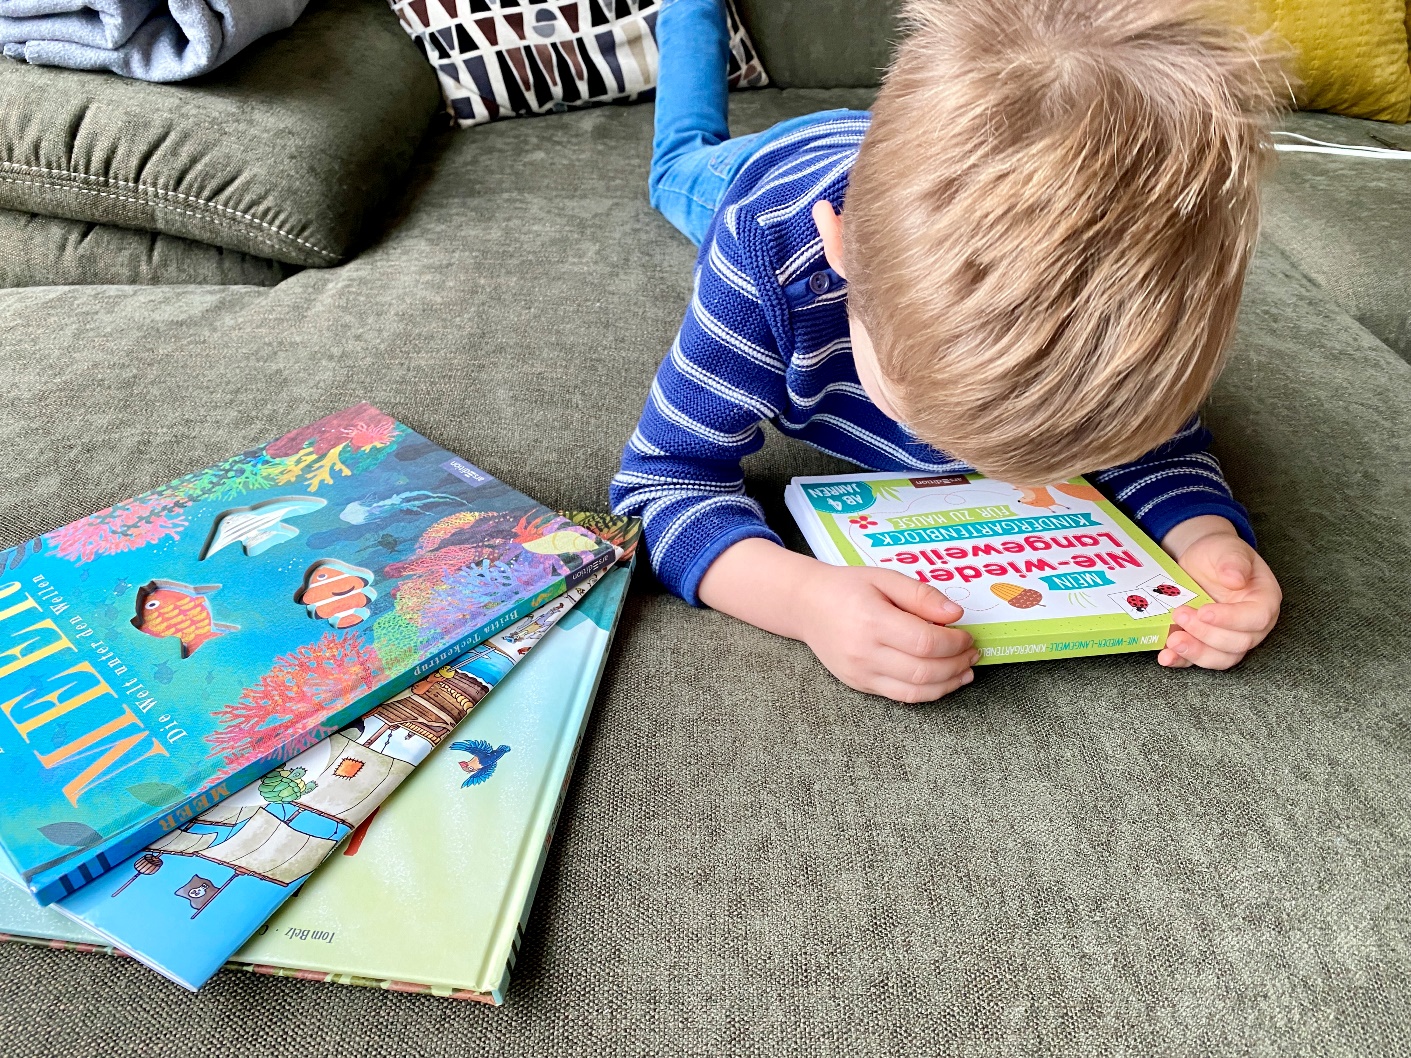 arsedition kinderbuch 1 - Start in den Winter mit den Kinderbüchern von arsEdition